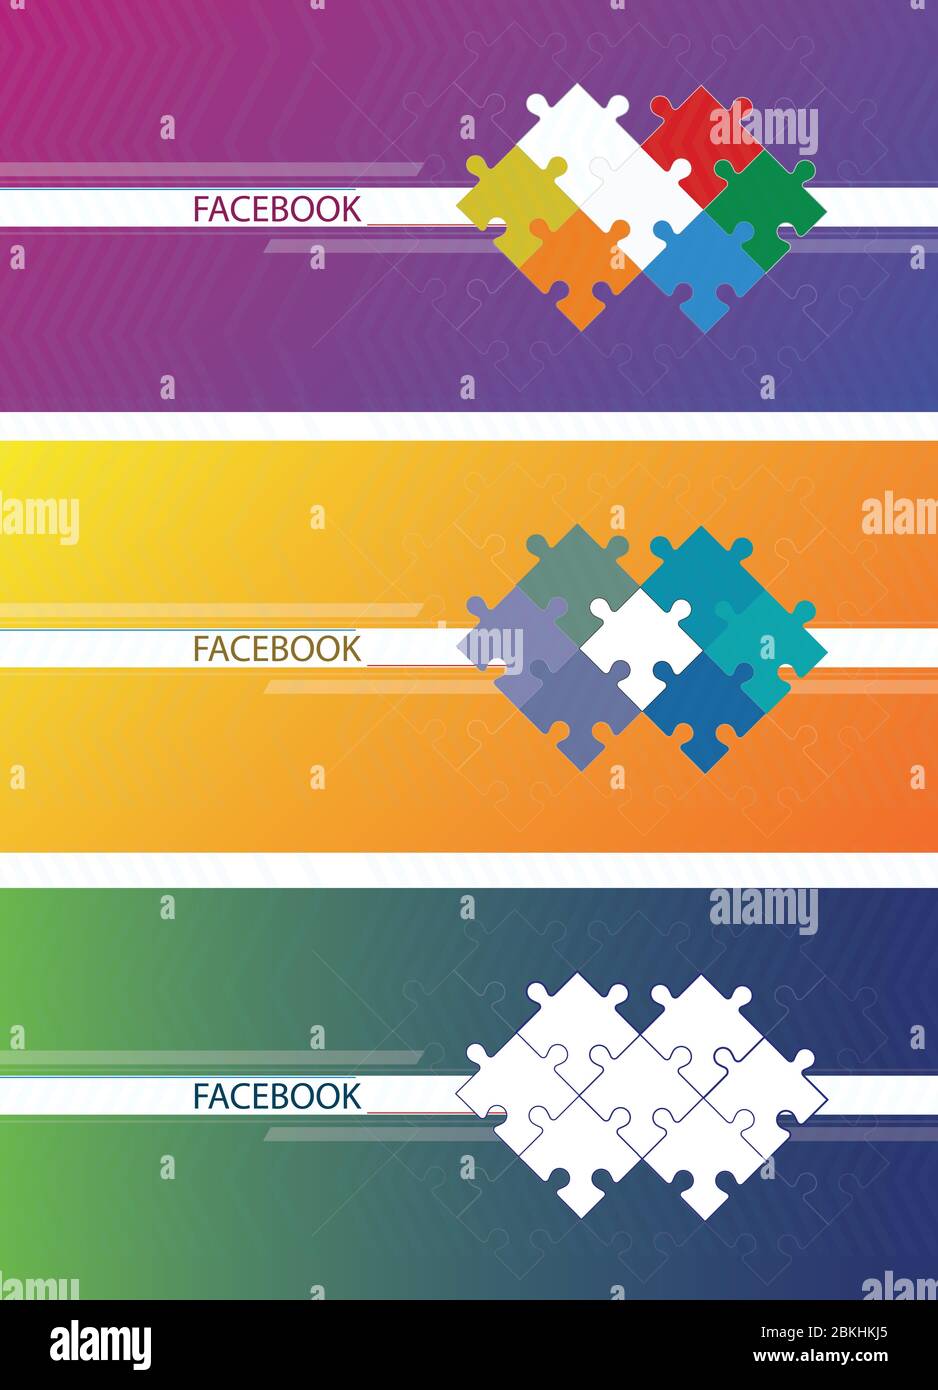 Banner für das soziale Netzwerk von facebook. Blauer abstrakter Hintergrund mit weißen Streifen. Zusammengebaut Puzzle. Stock Vektor